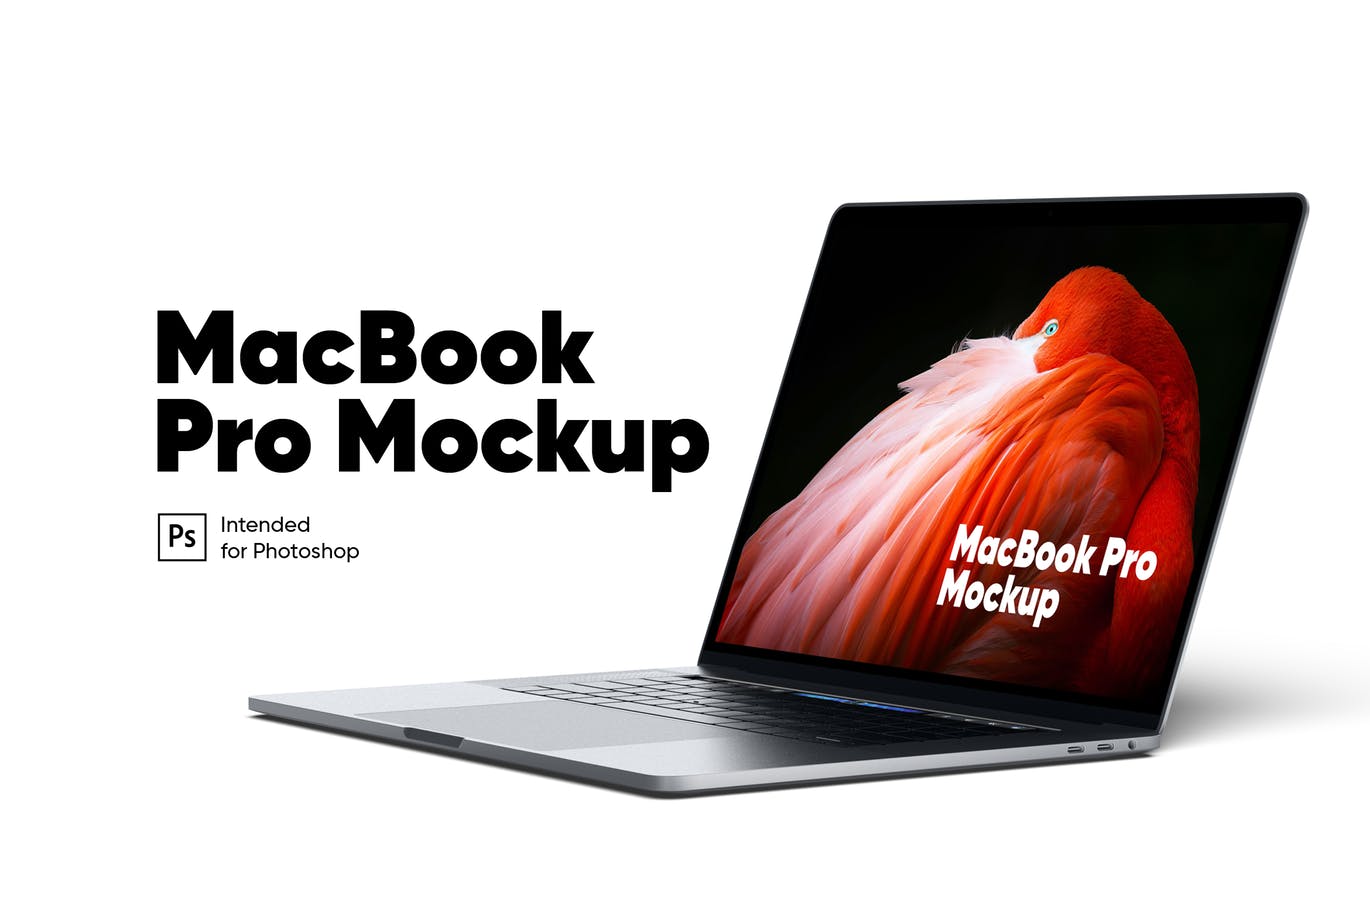 MacBook Pro笔记本电脑视网膜屏演示素材库精选样机 MacBook Pro Mockup插图